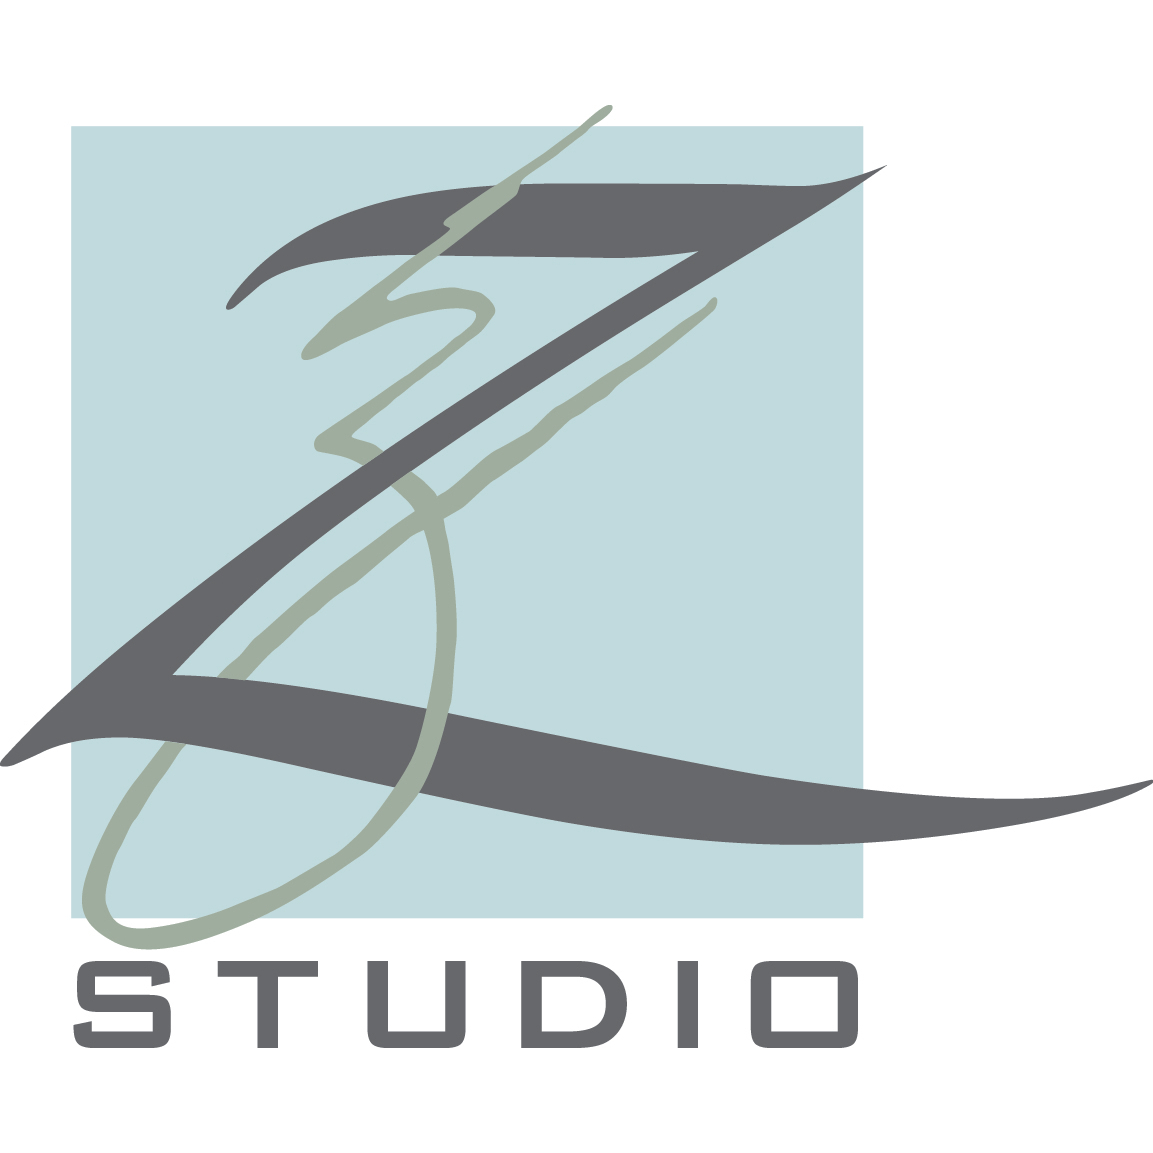 Z Studio